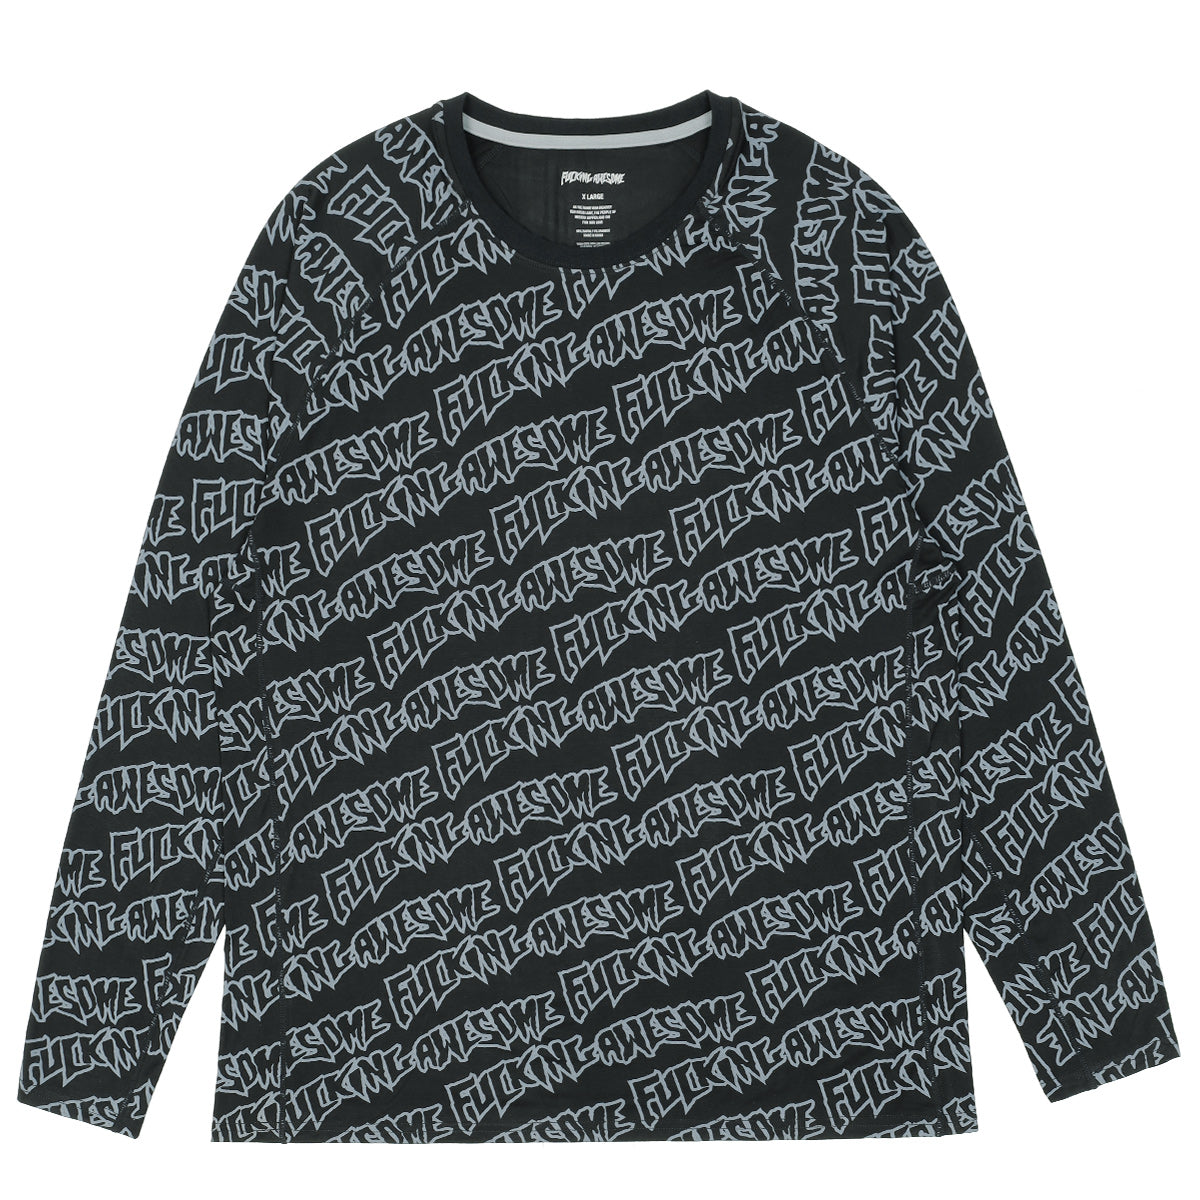 直営通販 - fucking awesome ロングtシャツ - 安い買取オンライン:954